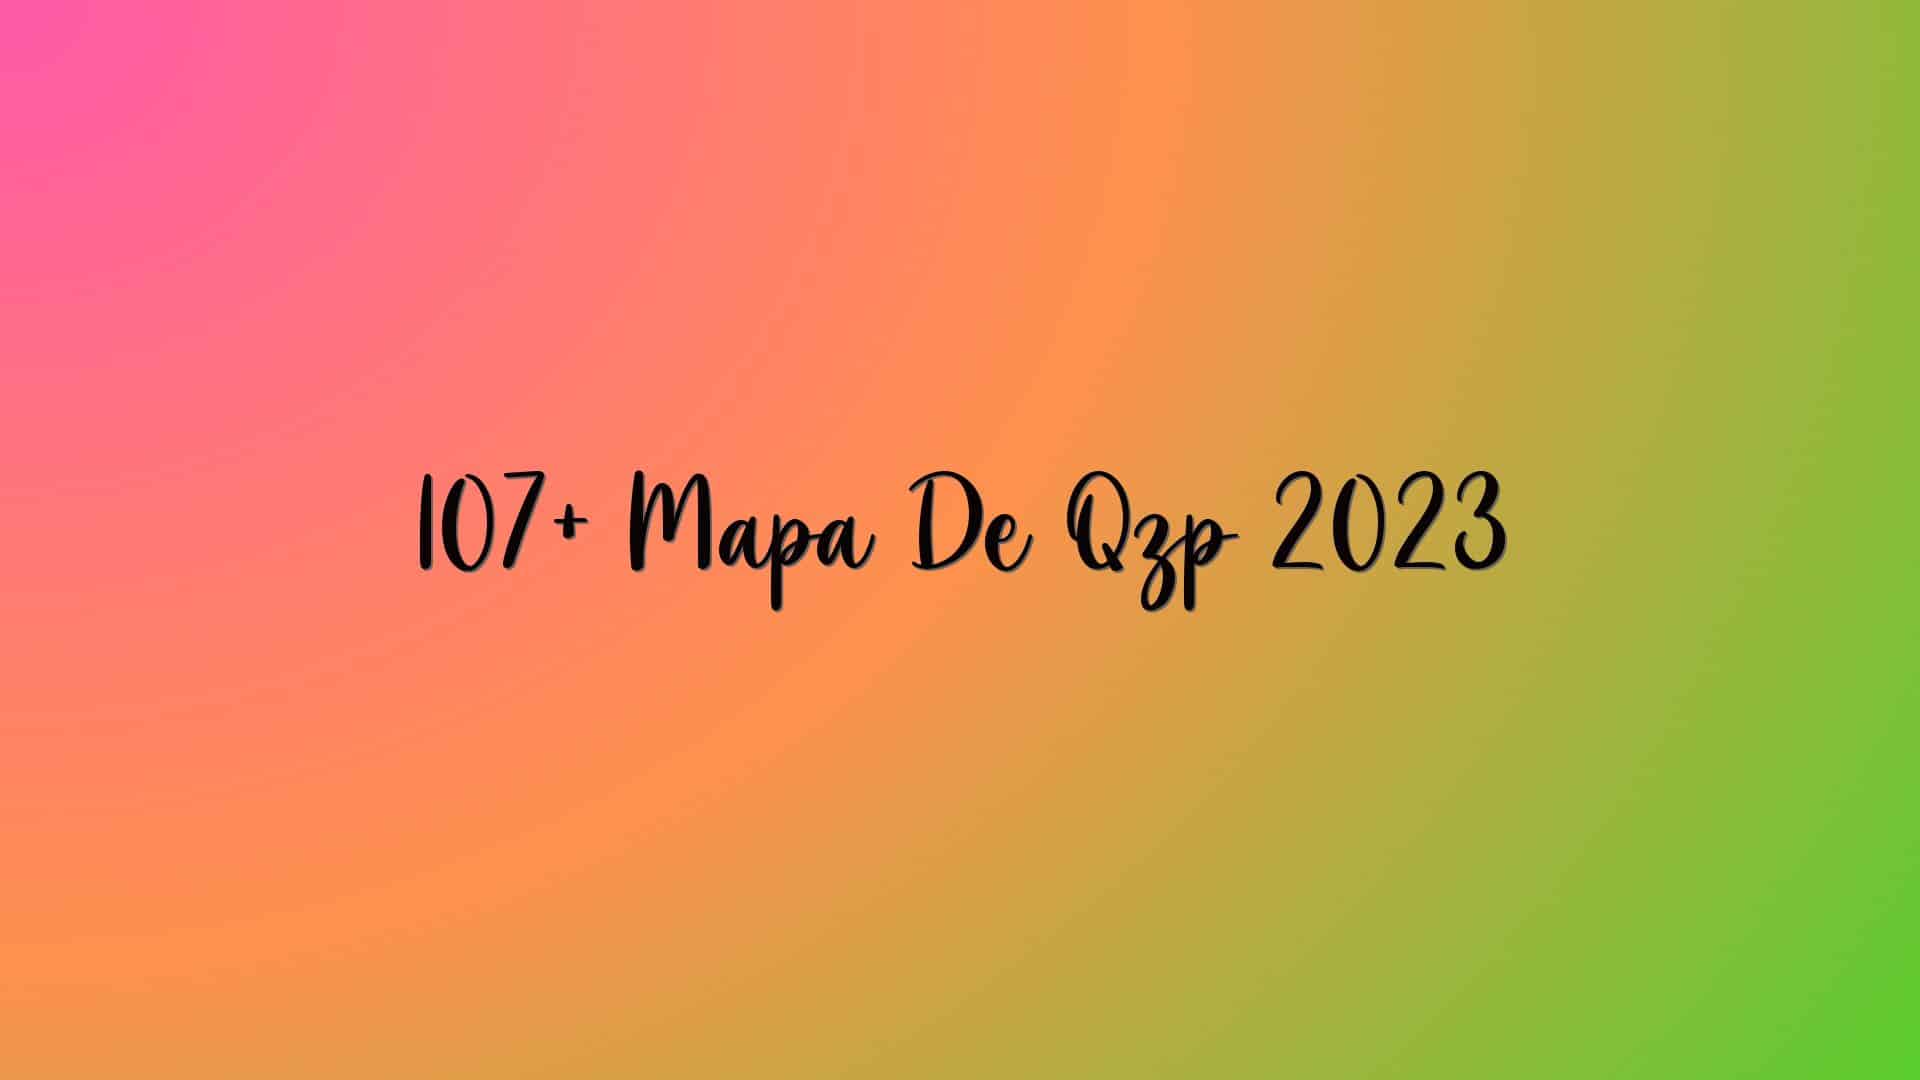 107+ Mapa De Qzp 2023